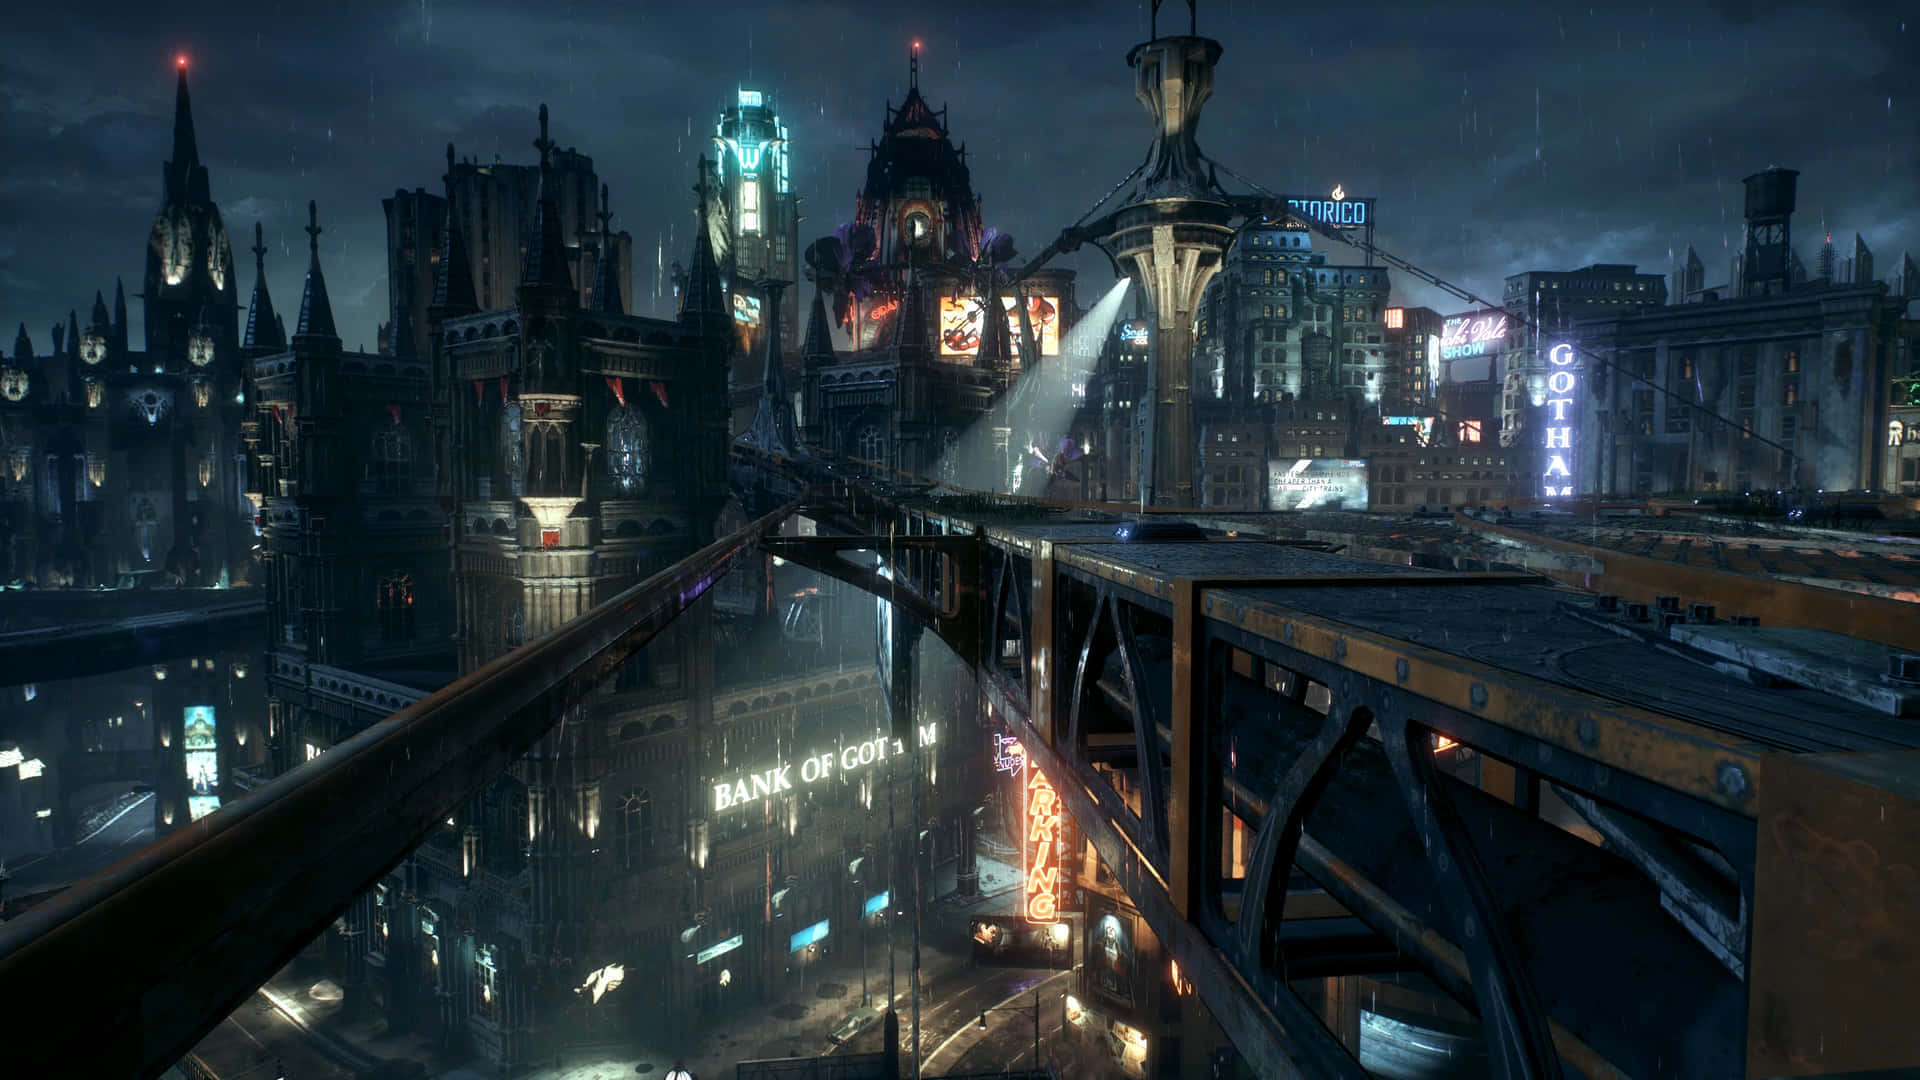 Fundosde Tela De Gotham City 1920 X 1080